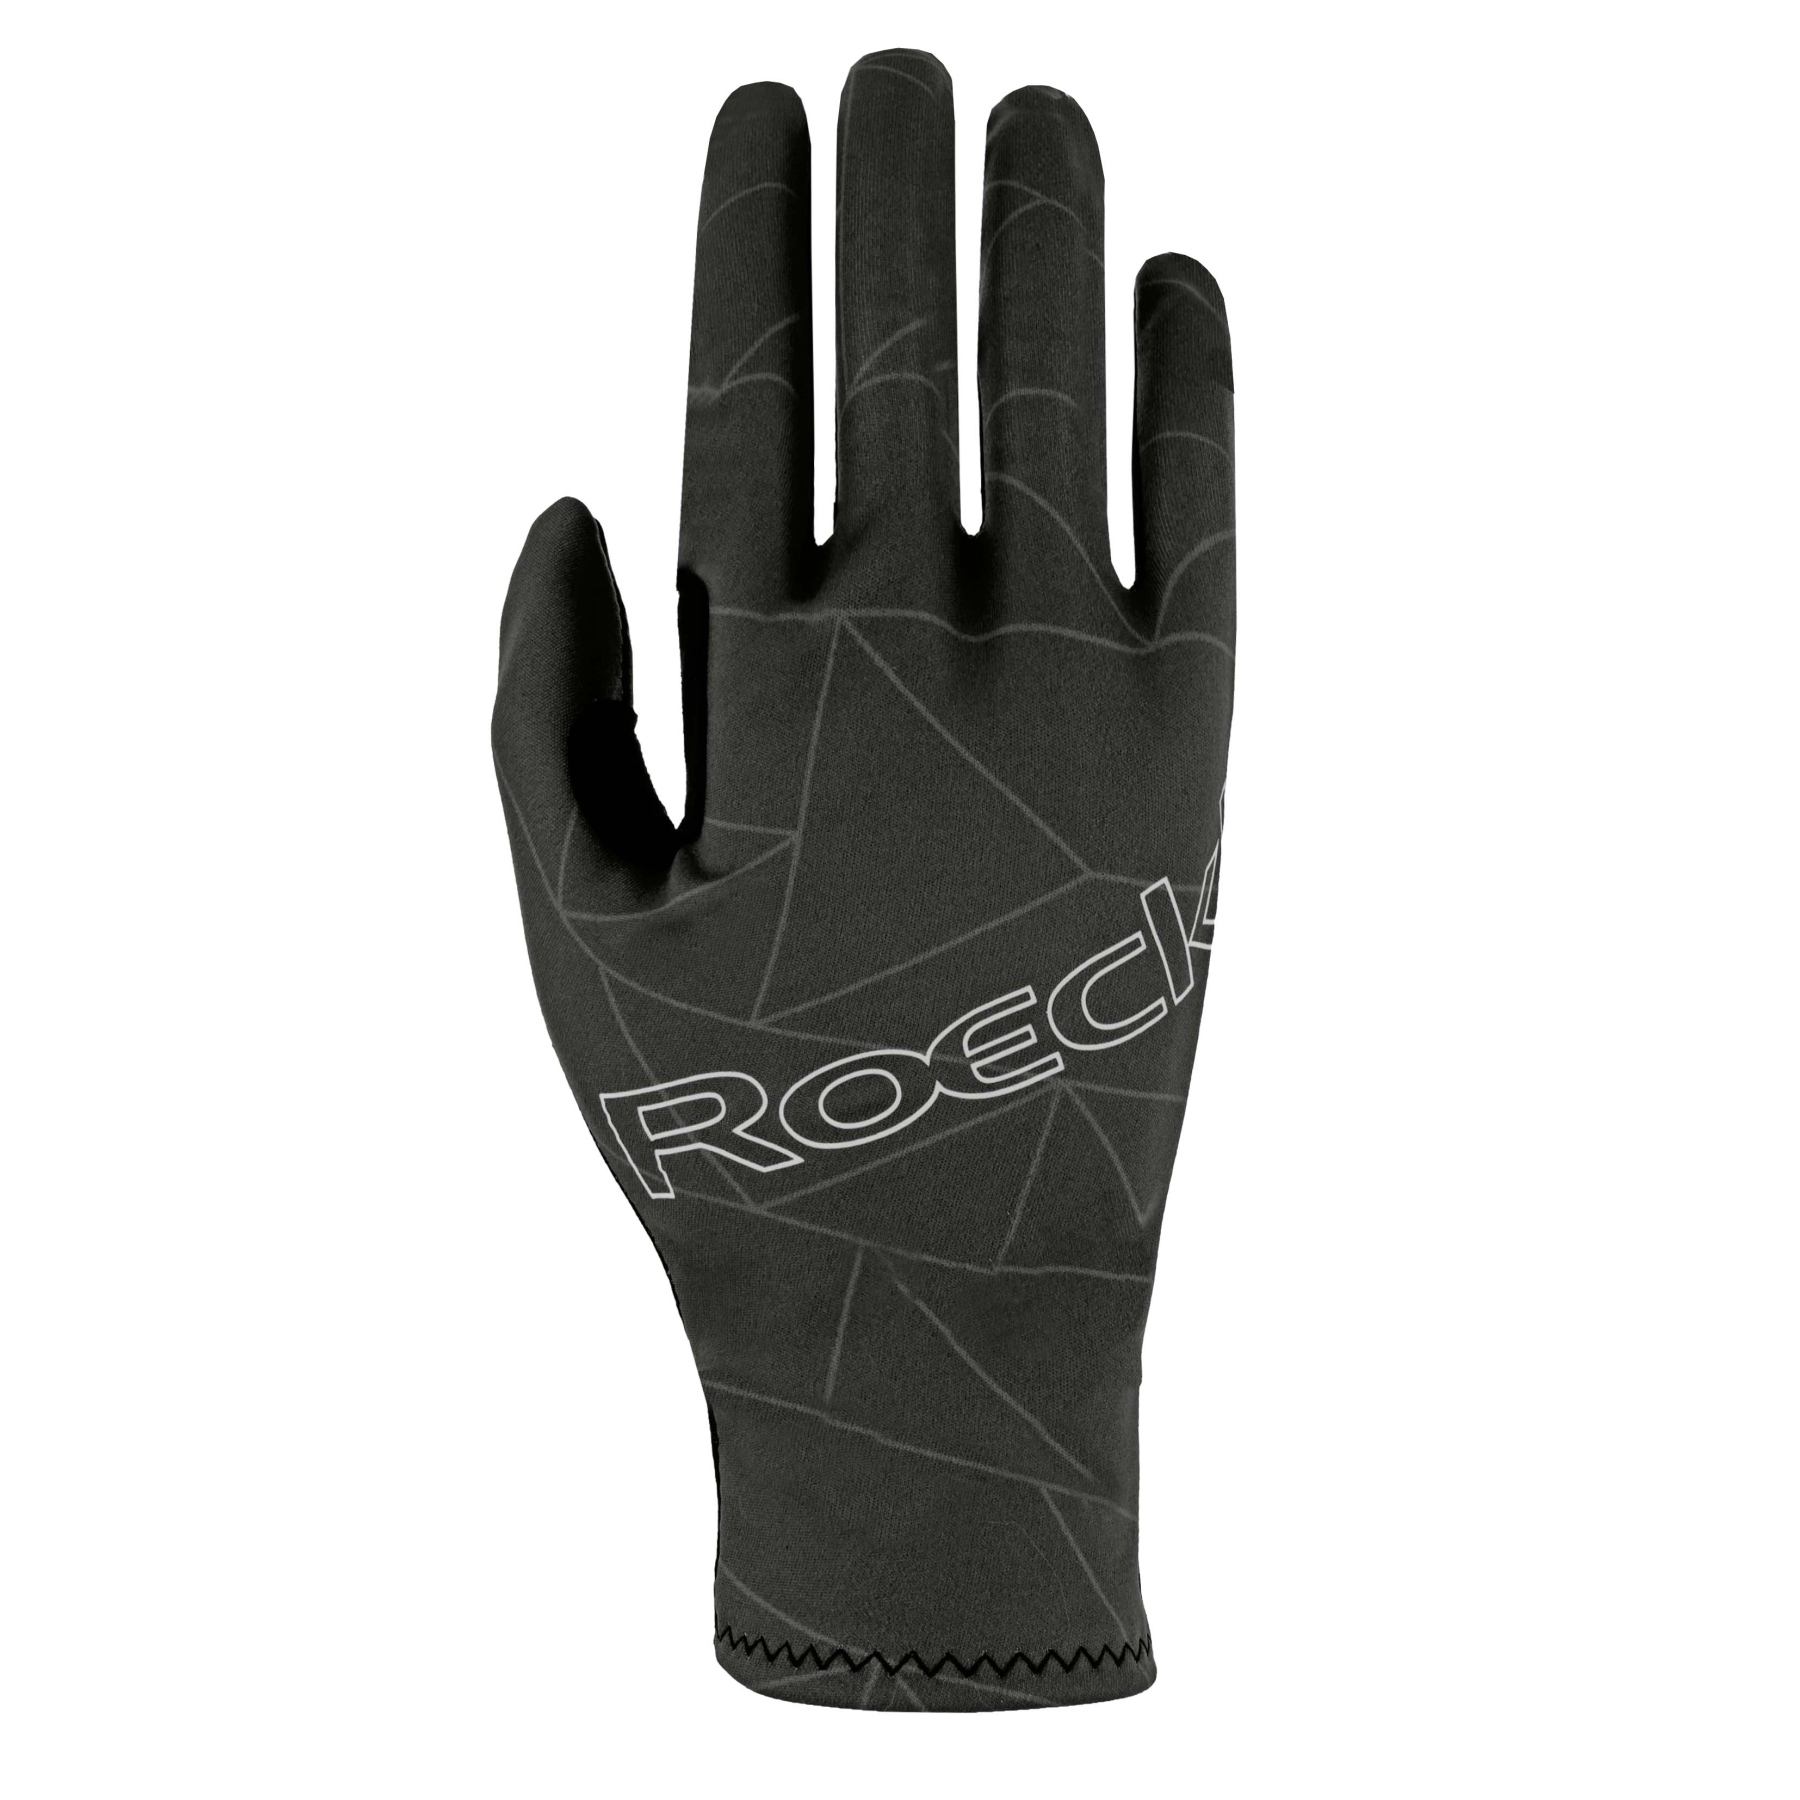 Produktbild von Roeckl Sports Raccano Fahrradhandschuhe - black shadow 9600